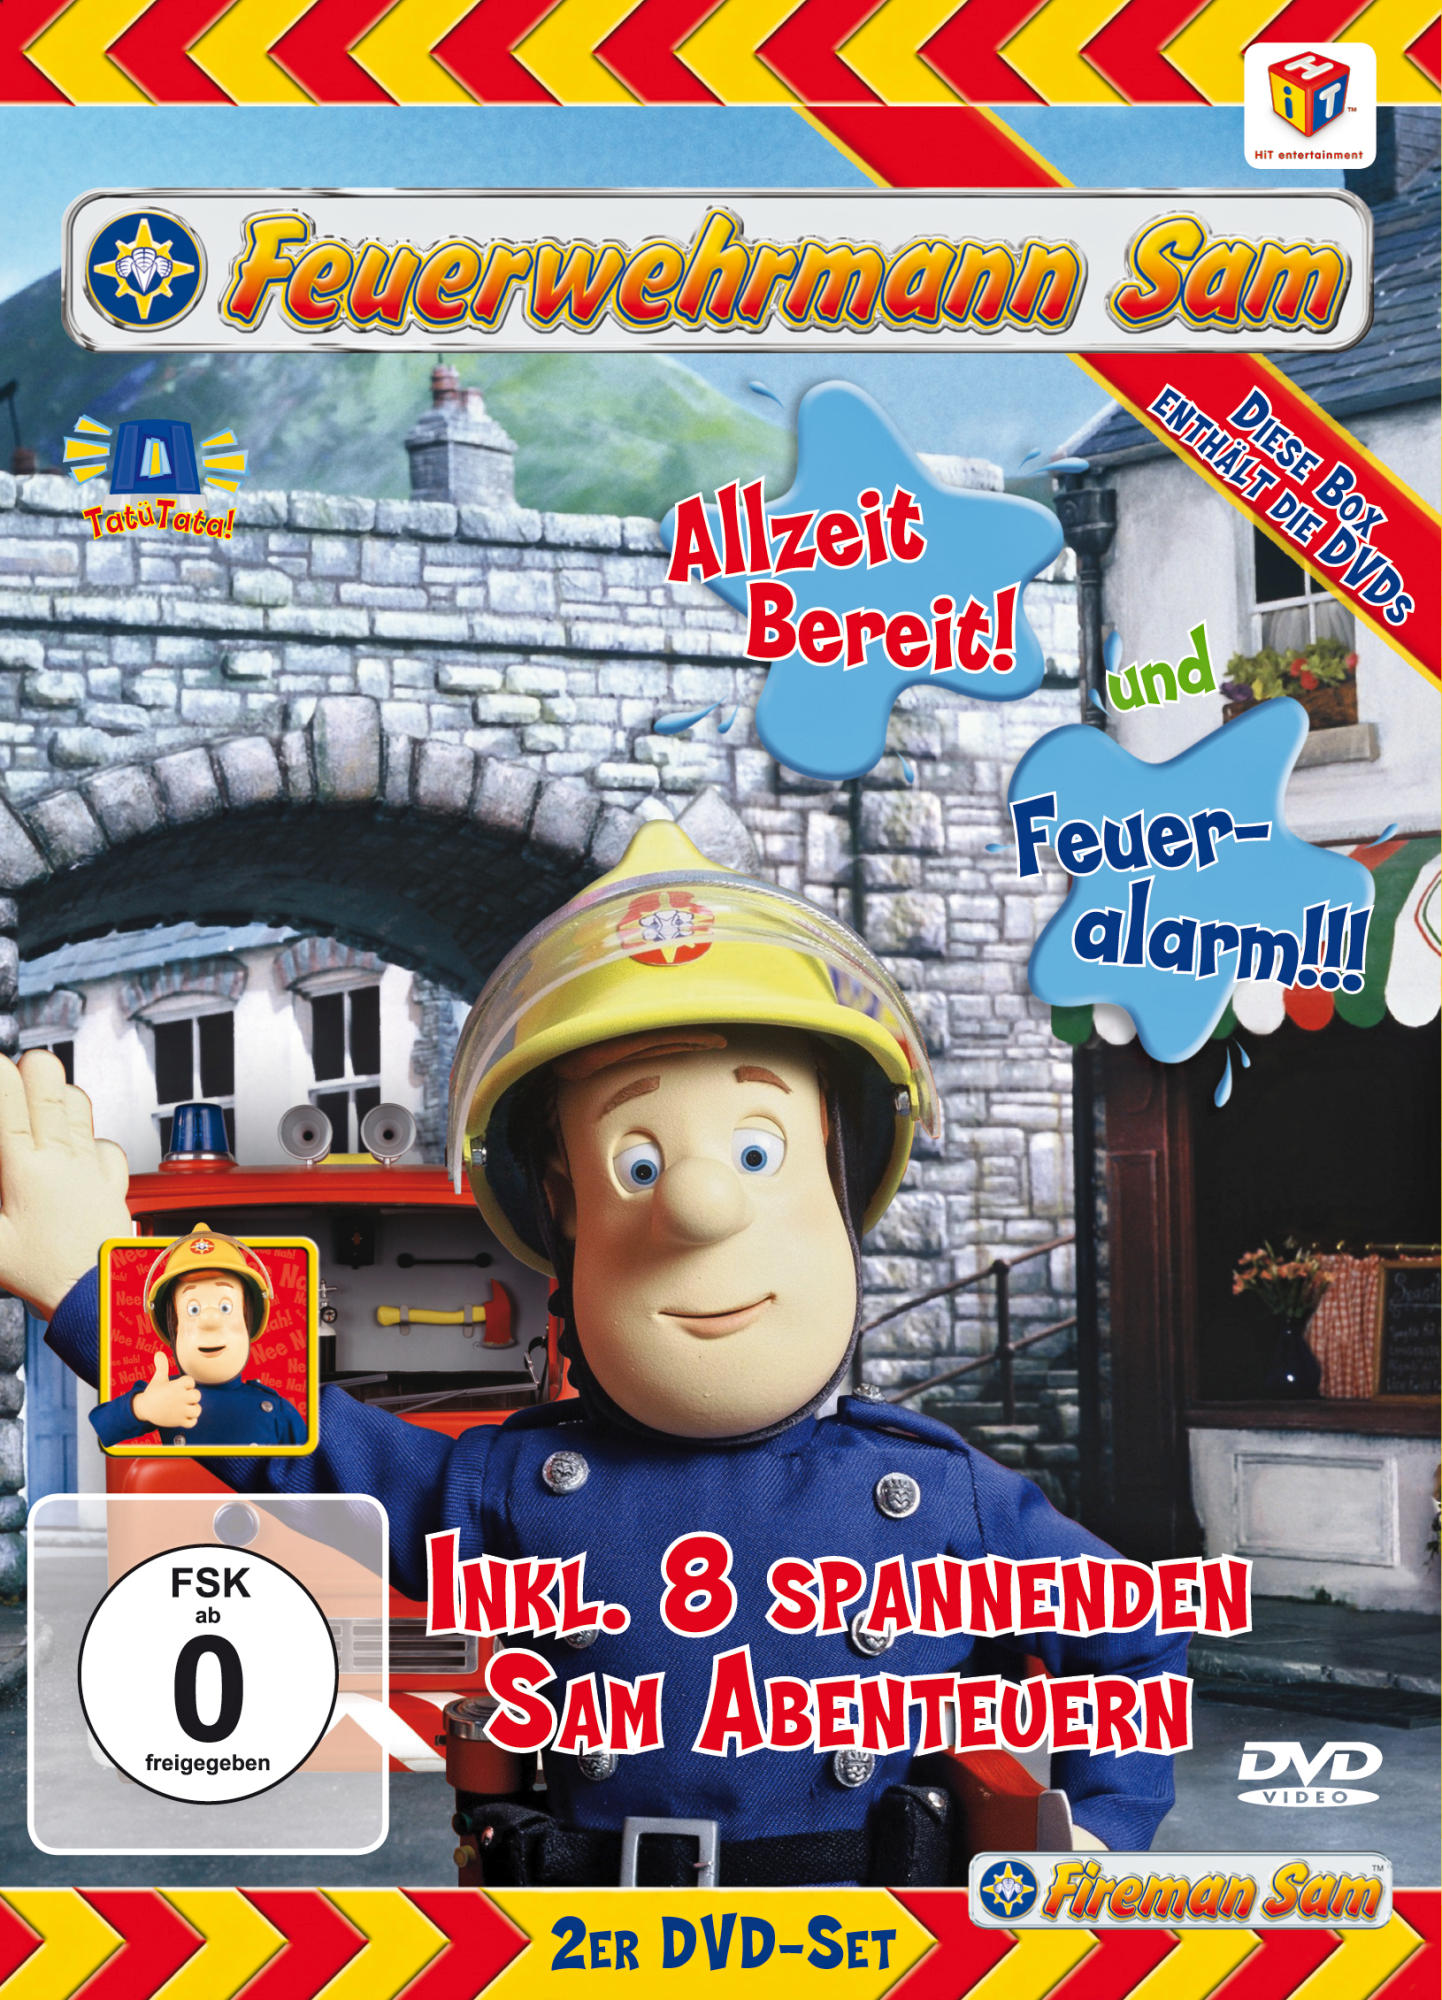 bereit! / DVD - Sam Feuerwehrmann Allzeit Feueralarm!!!